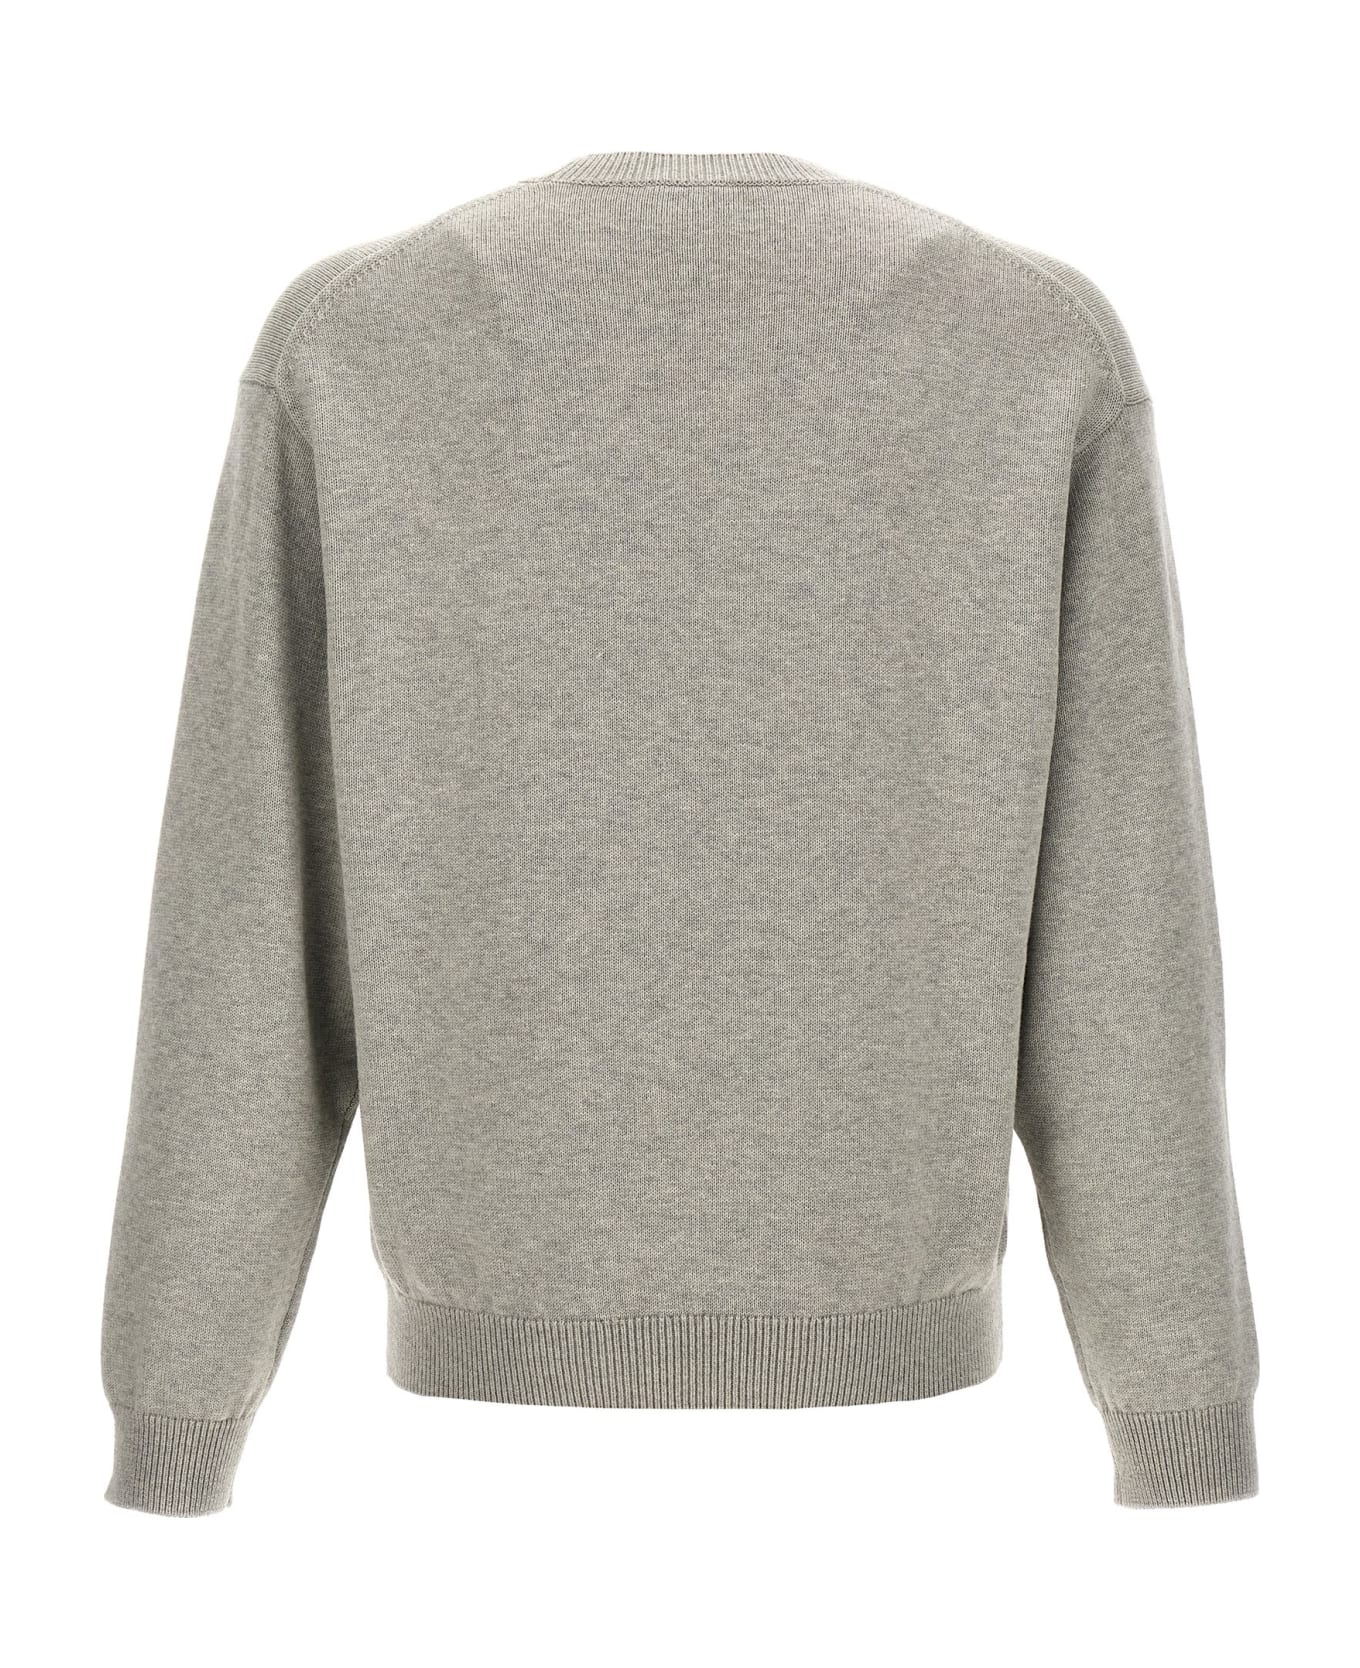 Kenzo Tiger Academy Sweater - grey